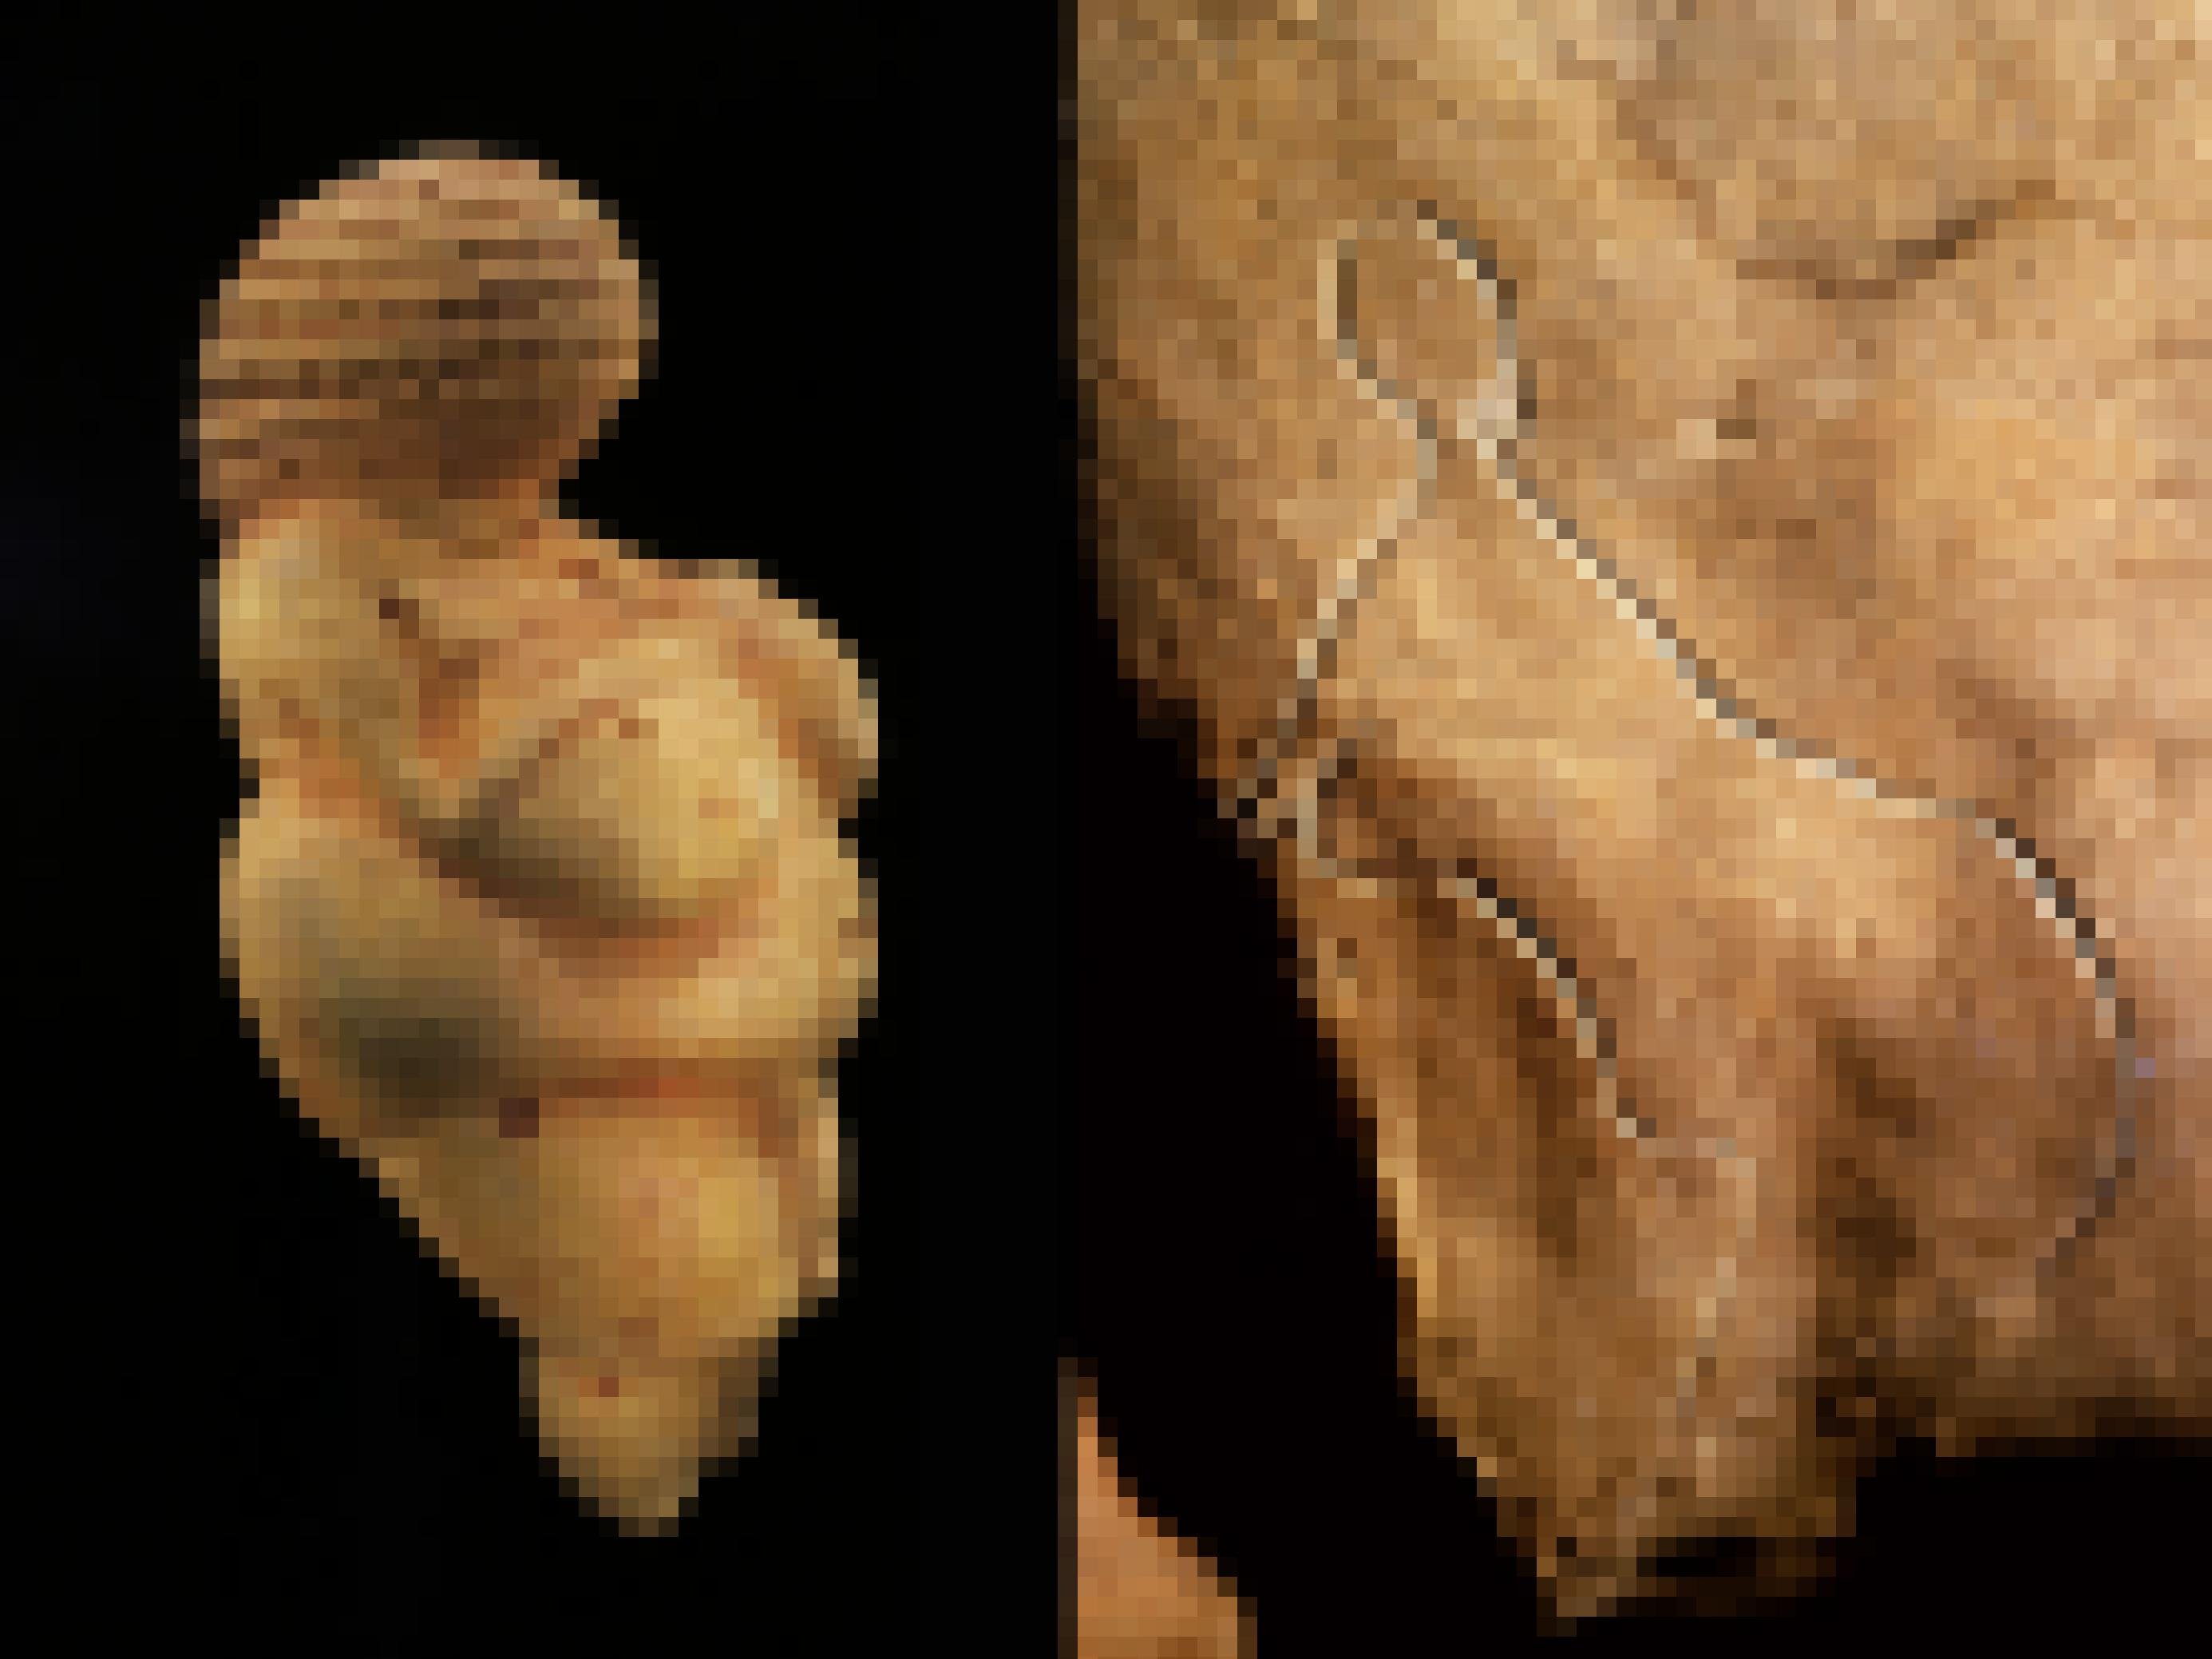 Auf der linken Seite dieser doppelten Abbildung ist die gelbliche Figur einer nackten, üppigen Frau zu sehen. Sie wurde in der Nähe von Wien gefunden und ist als Venus von Willendorf bekannt. Rechts ist der in den Fels geritzte Umriss einer Frau aus der Grotte de Cussac in Südwestfrankreich abgebildet. Figuren, Felszeichnungen und aufwendige Begräbnisse in Höhlen waren vor 25.000 bis 30.000 Jahren stark verbreitet. Forschende bezeichnen die Kulturepoche jener Zeit als Gravettien.